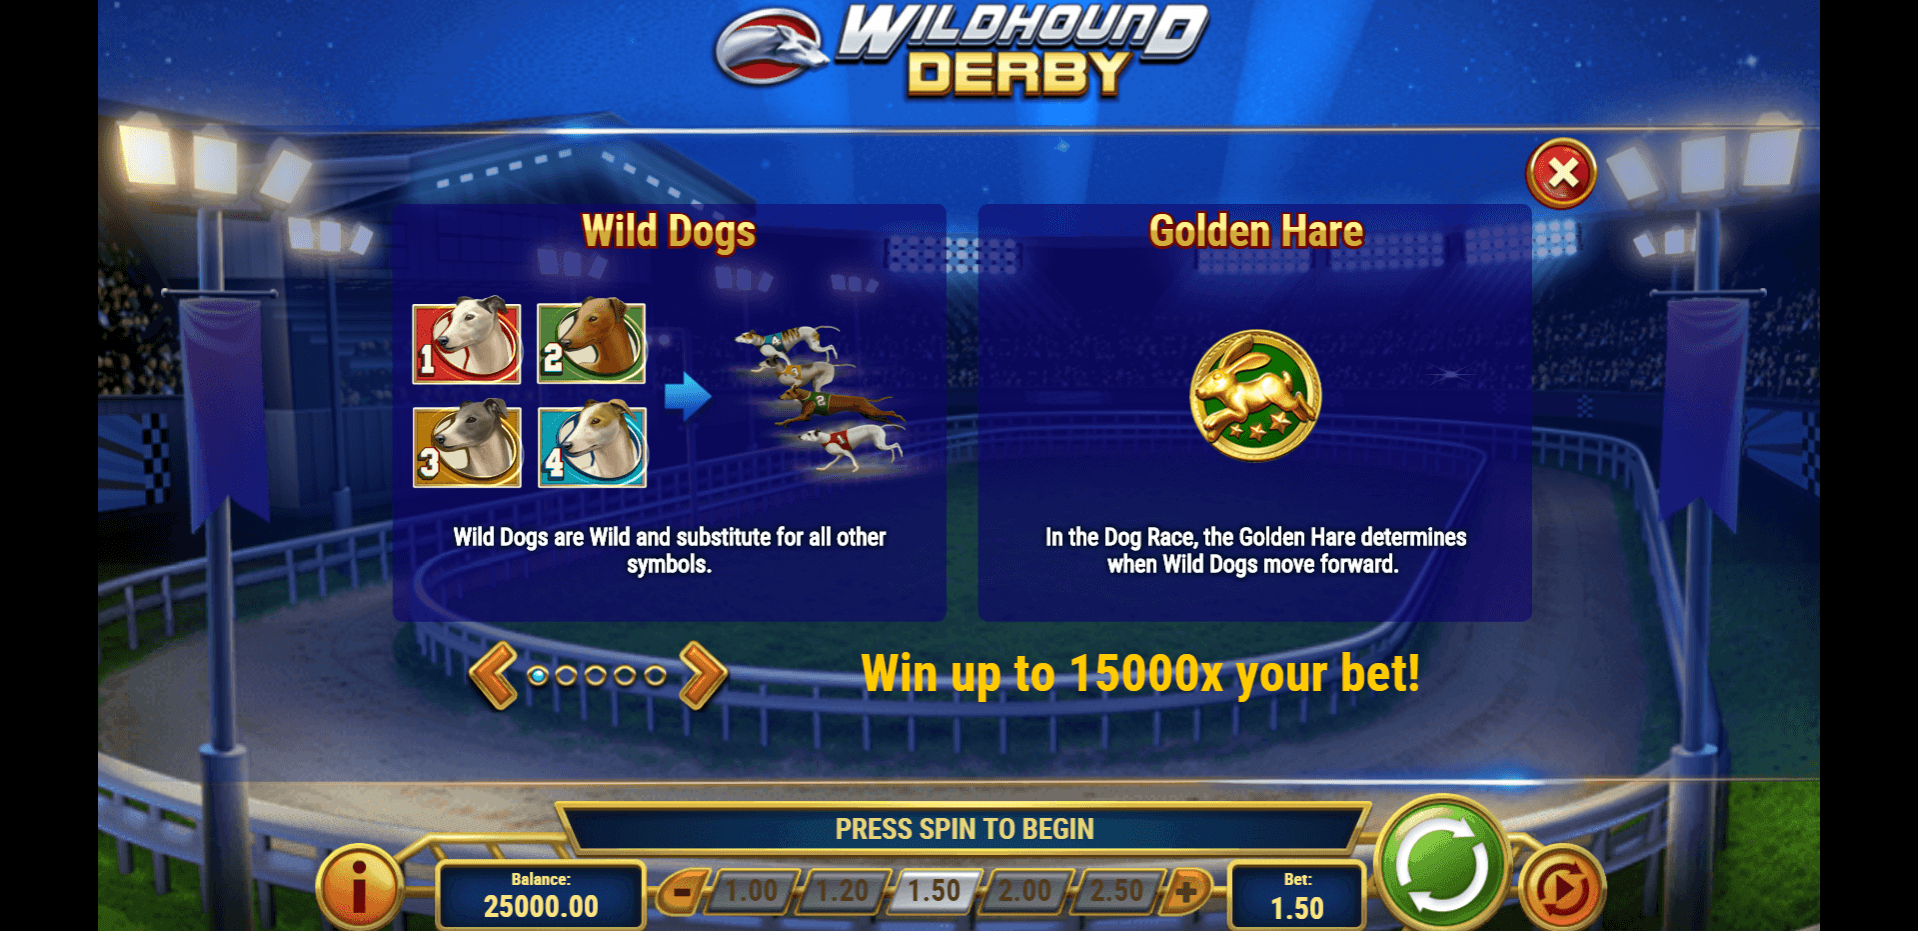 wildhound derby slot machine detail image 0